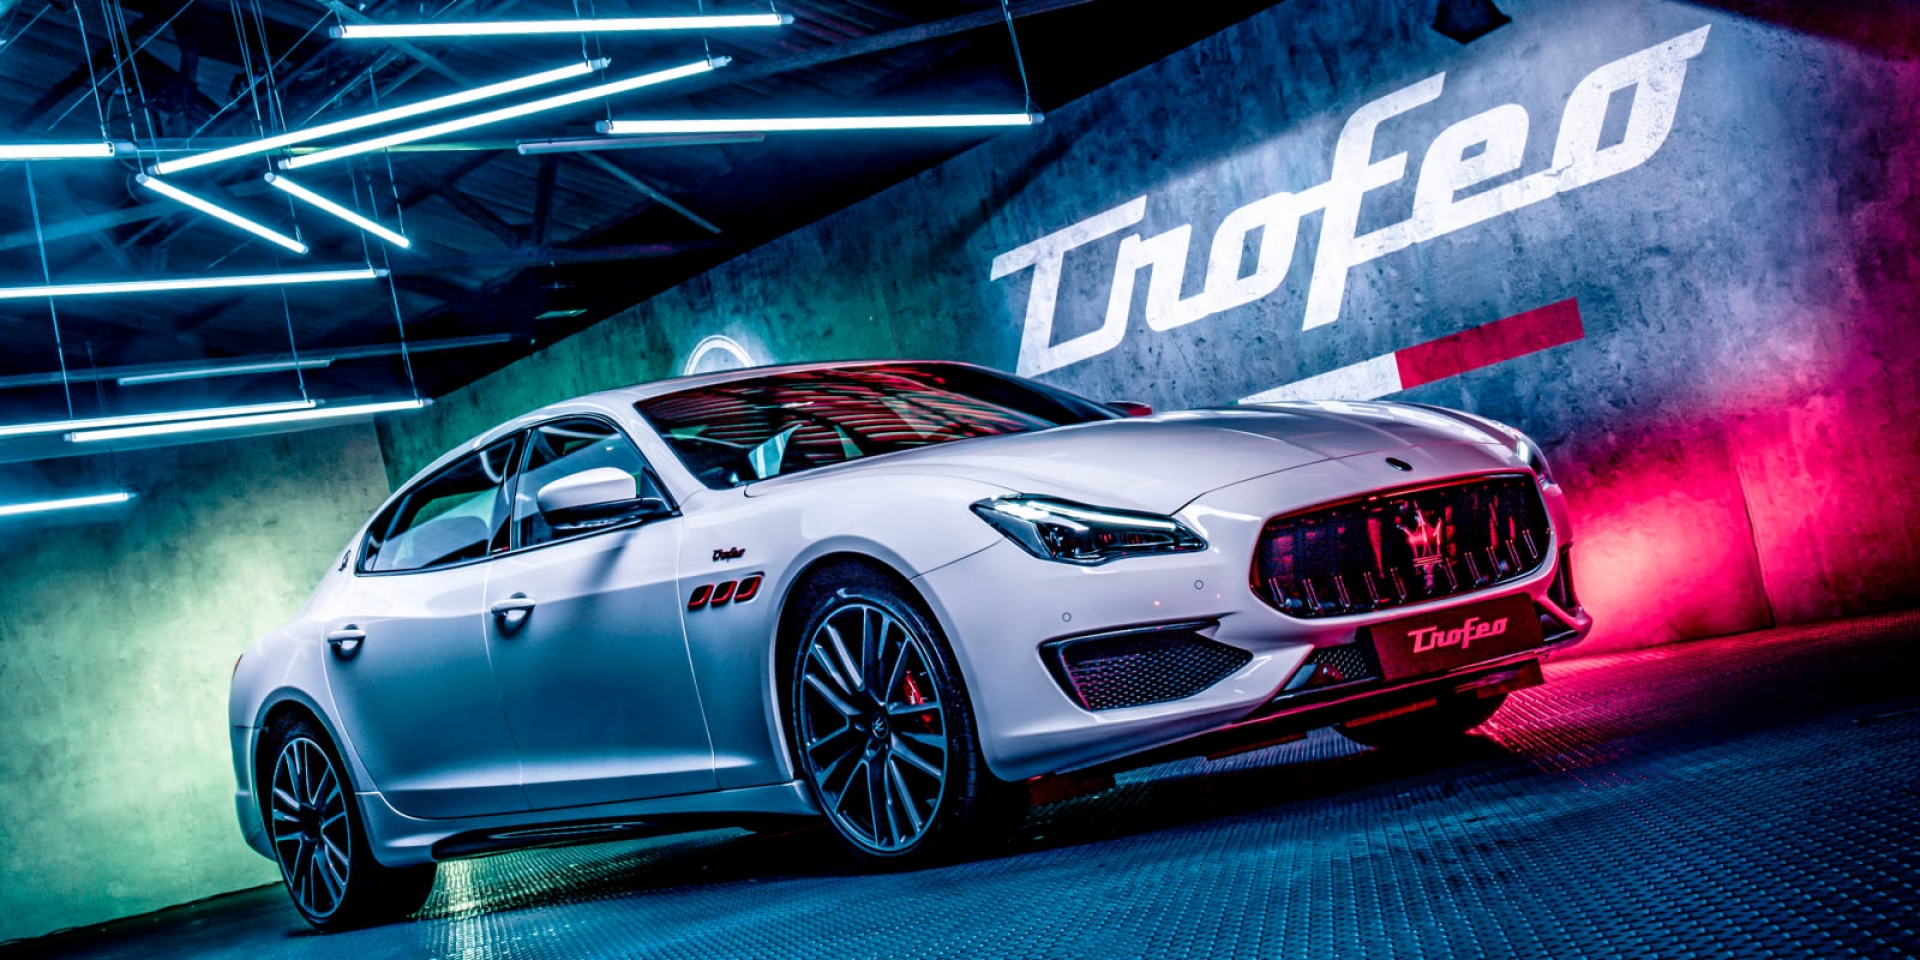 官方新聞稿。終極性能的完美詮釋 Maserati TROFEO全車系 重裝登場